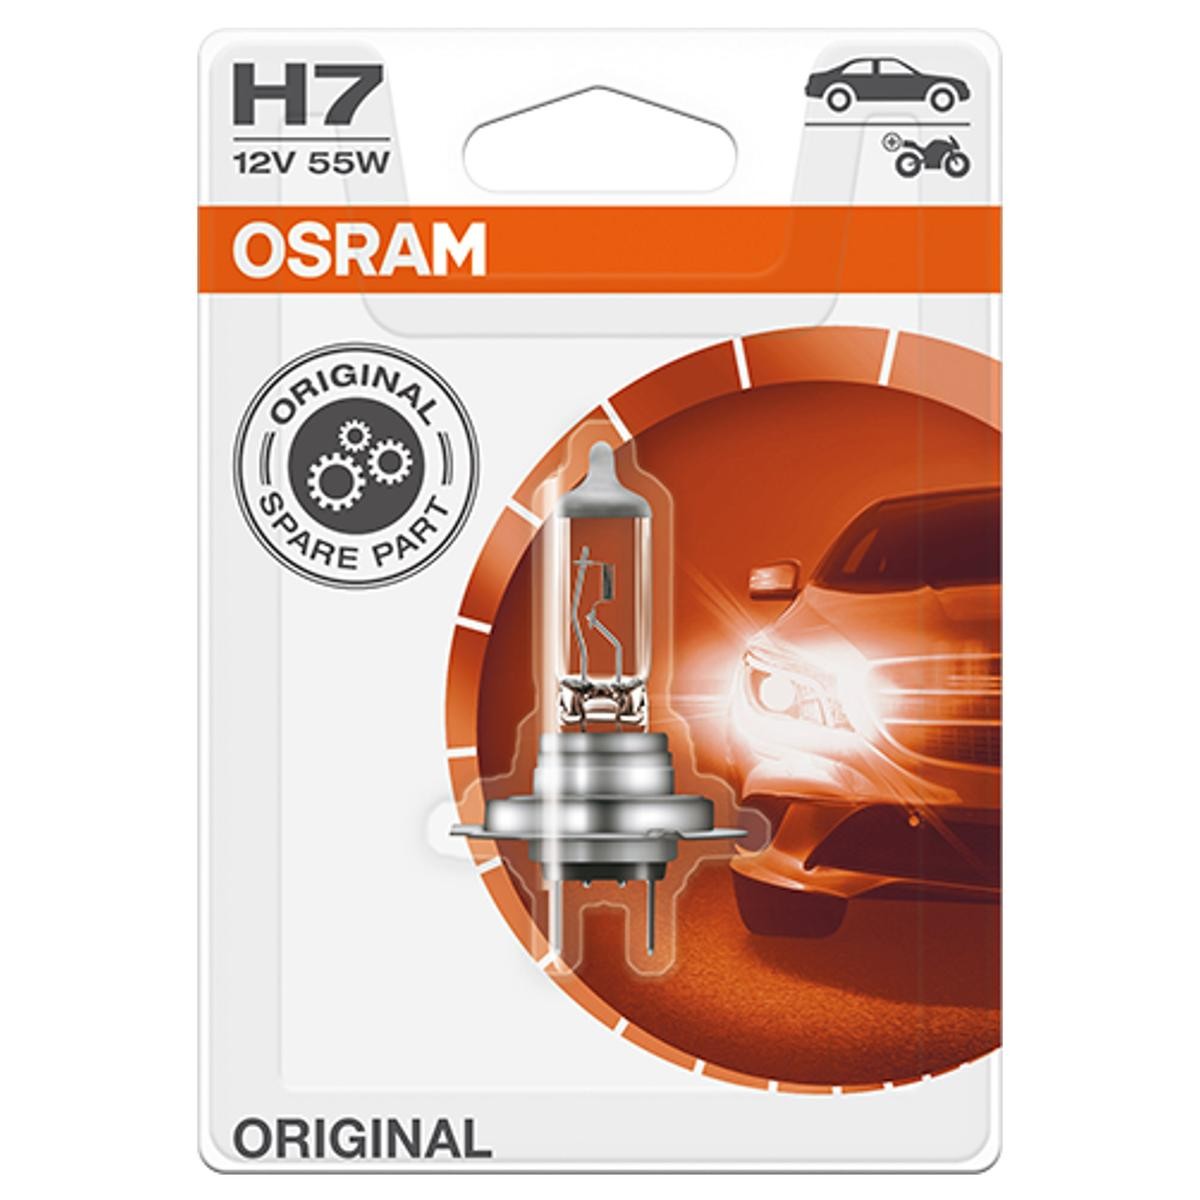 H7 OSRAM 64210-01B RENAULT TRUCKS Lampe für Fernlicht H7 12V 55W 3200K Halogen